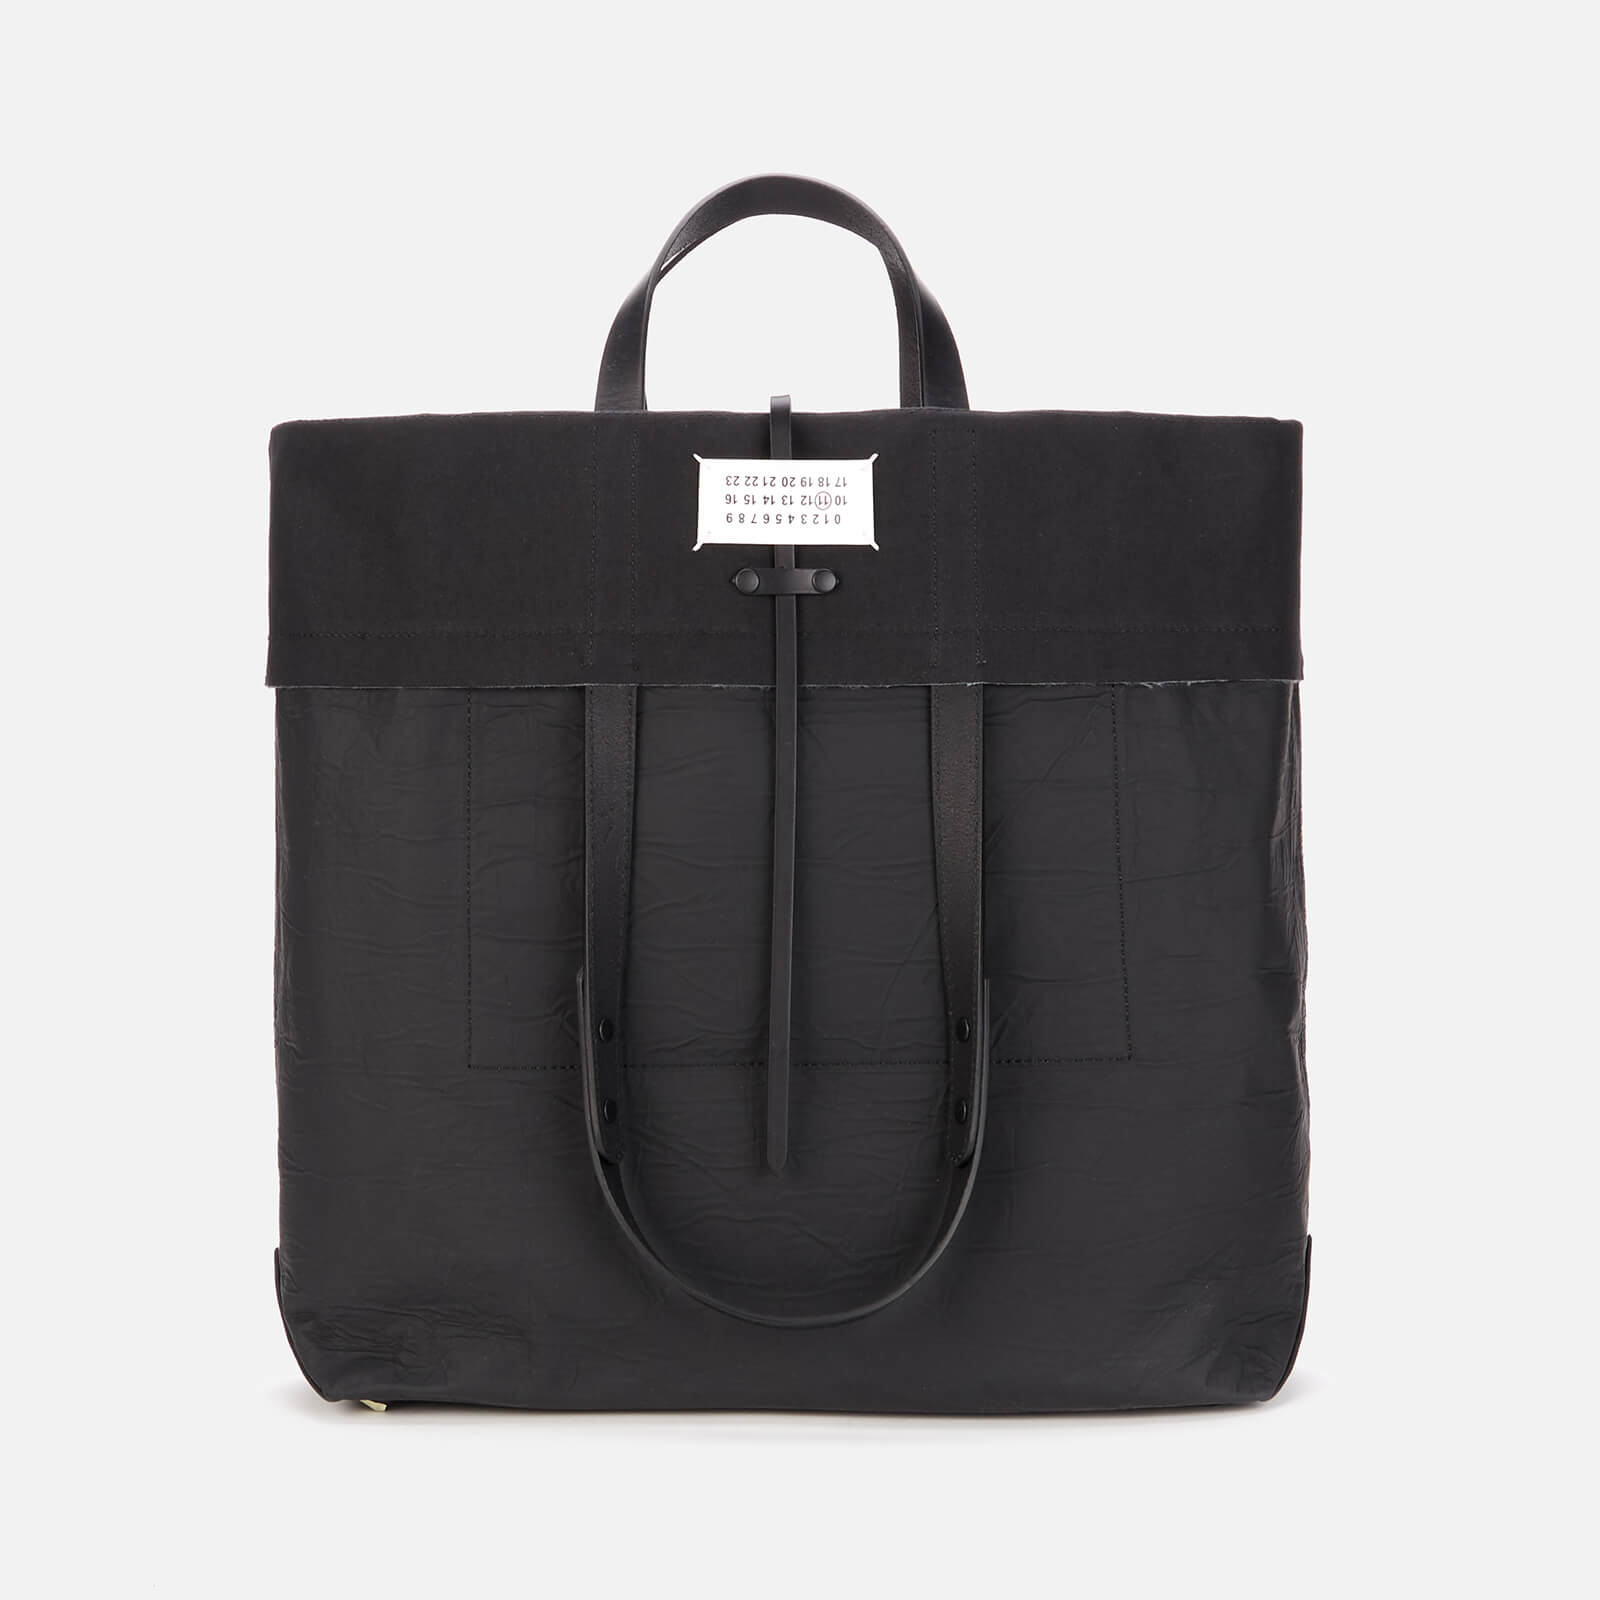 Maison Margiela Men's Wrinkled Shopping Bag - Black